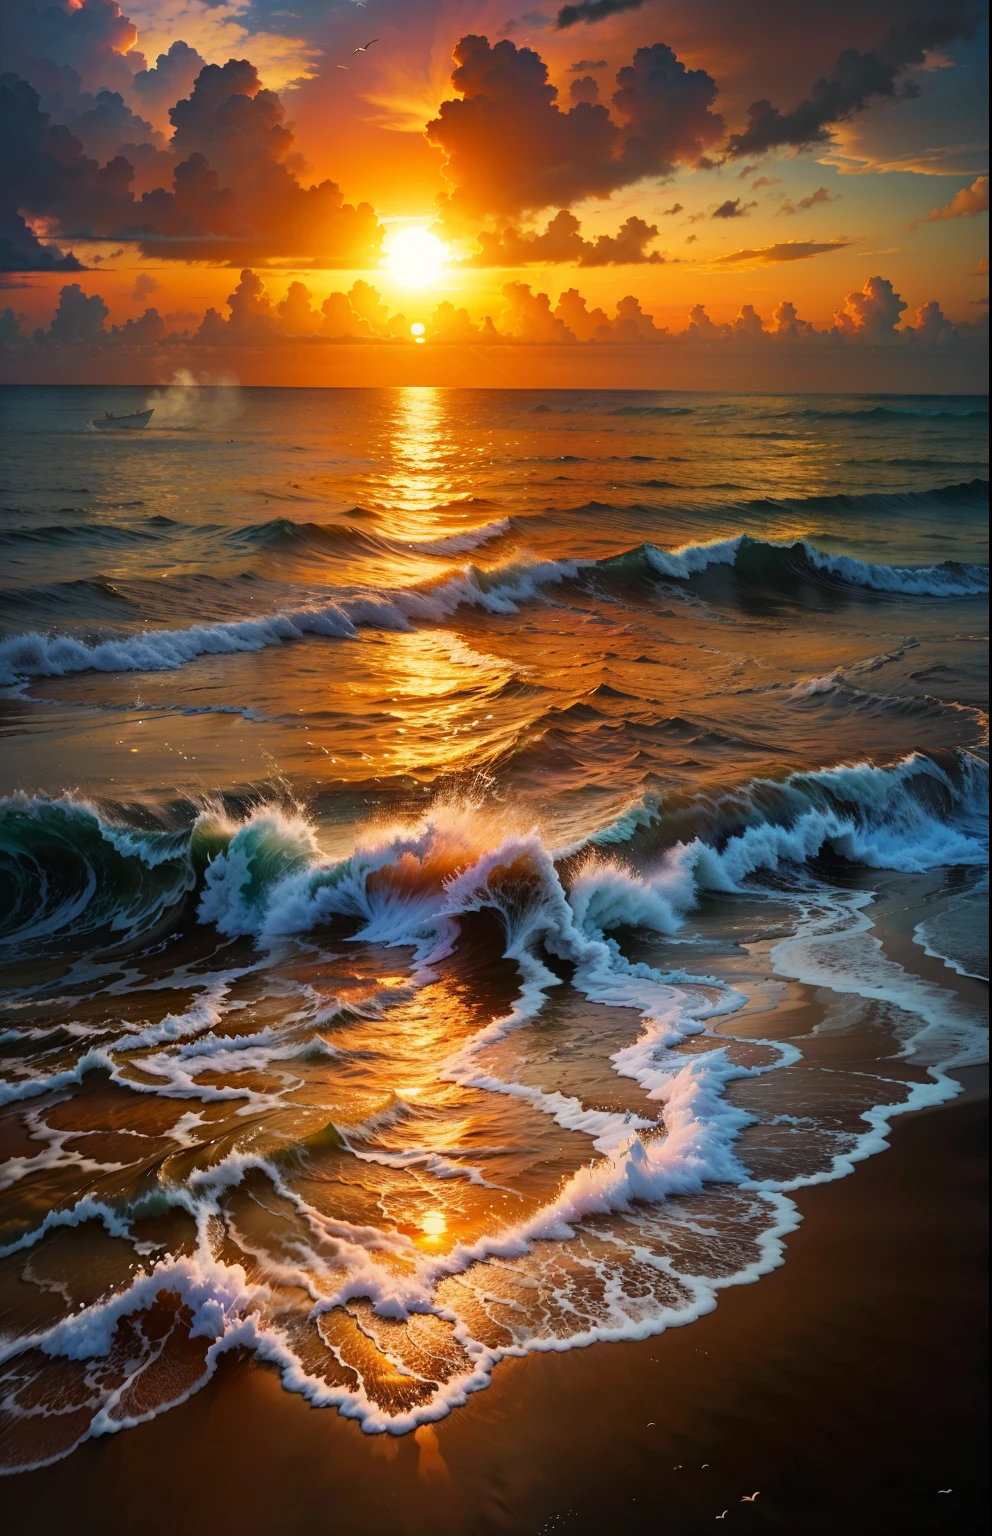 Um pôr do sol absolutamente hipnotizante sobre a praia, com uma mistura de laranjas, rosa, e amarelos enchendo o céu. Águas cristalinas do mar beijando suavemente a costa, com praia de areia branca que se estende por toda parte. A cena é dinâmica e de tirar o fôlego, com gaivotas voando alto no céu e palmeiras balançando suavemente. Aprecie a atmosfera calma e deixe a tranquilidade tomar conta de você.